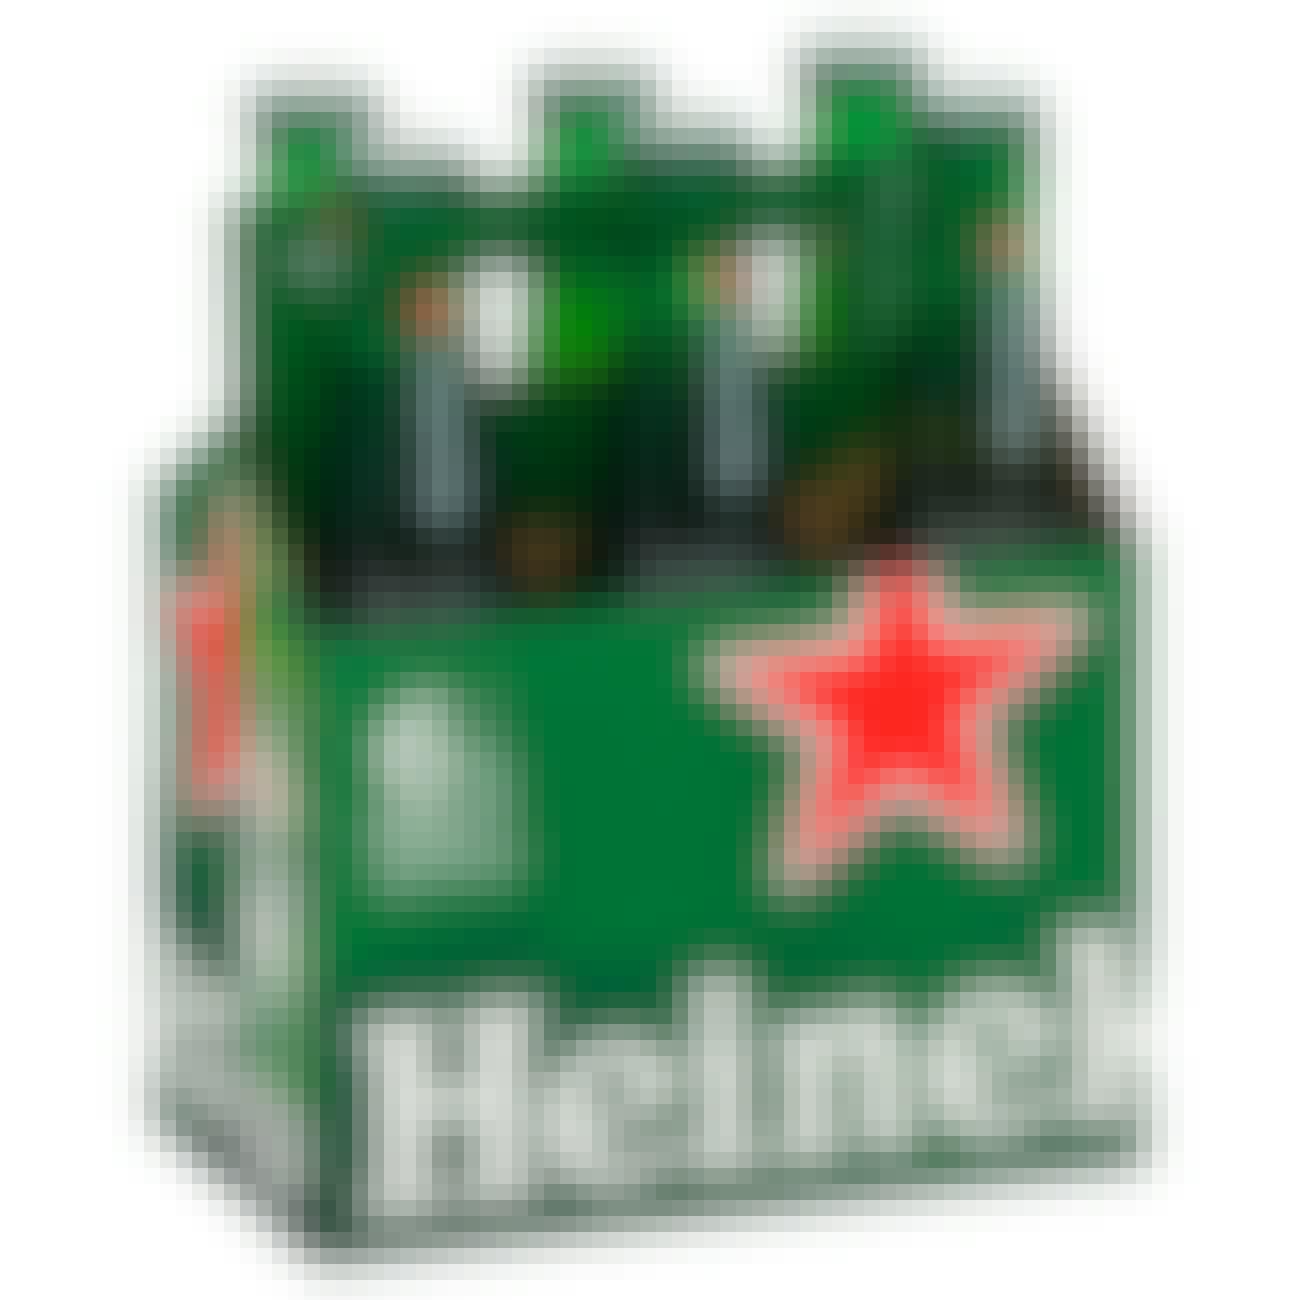 Heineken Lager 6 pack 12 oz. Bottle